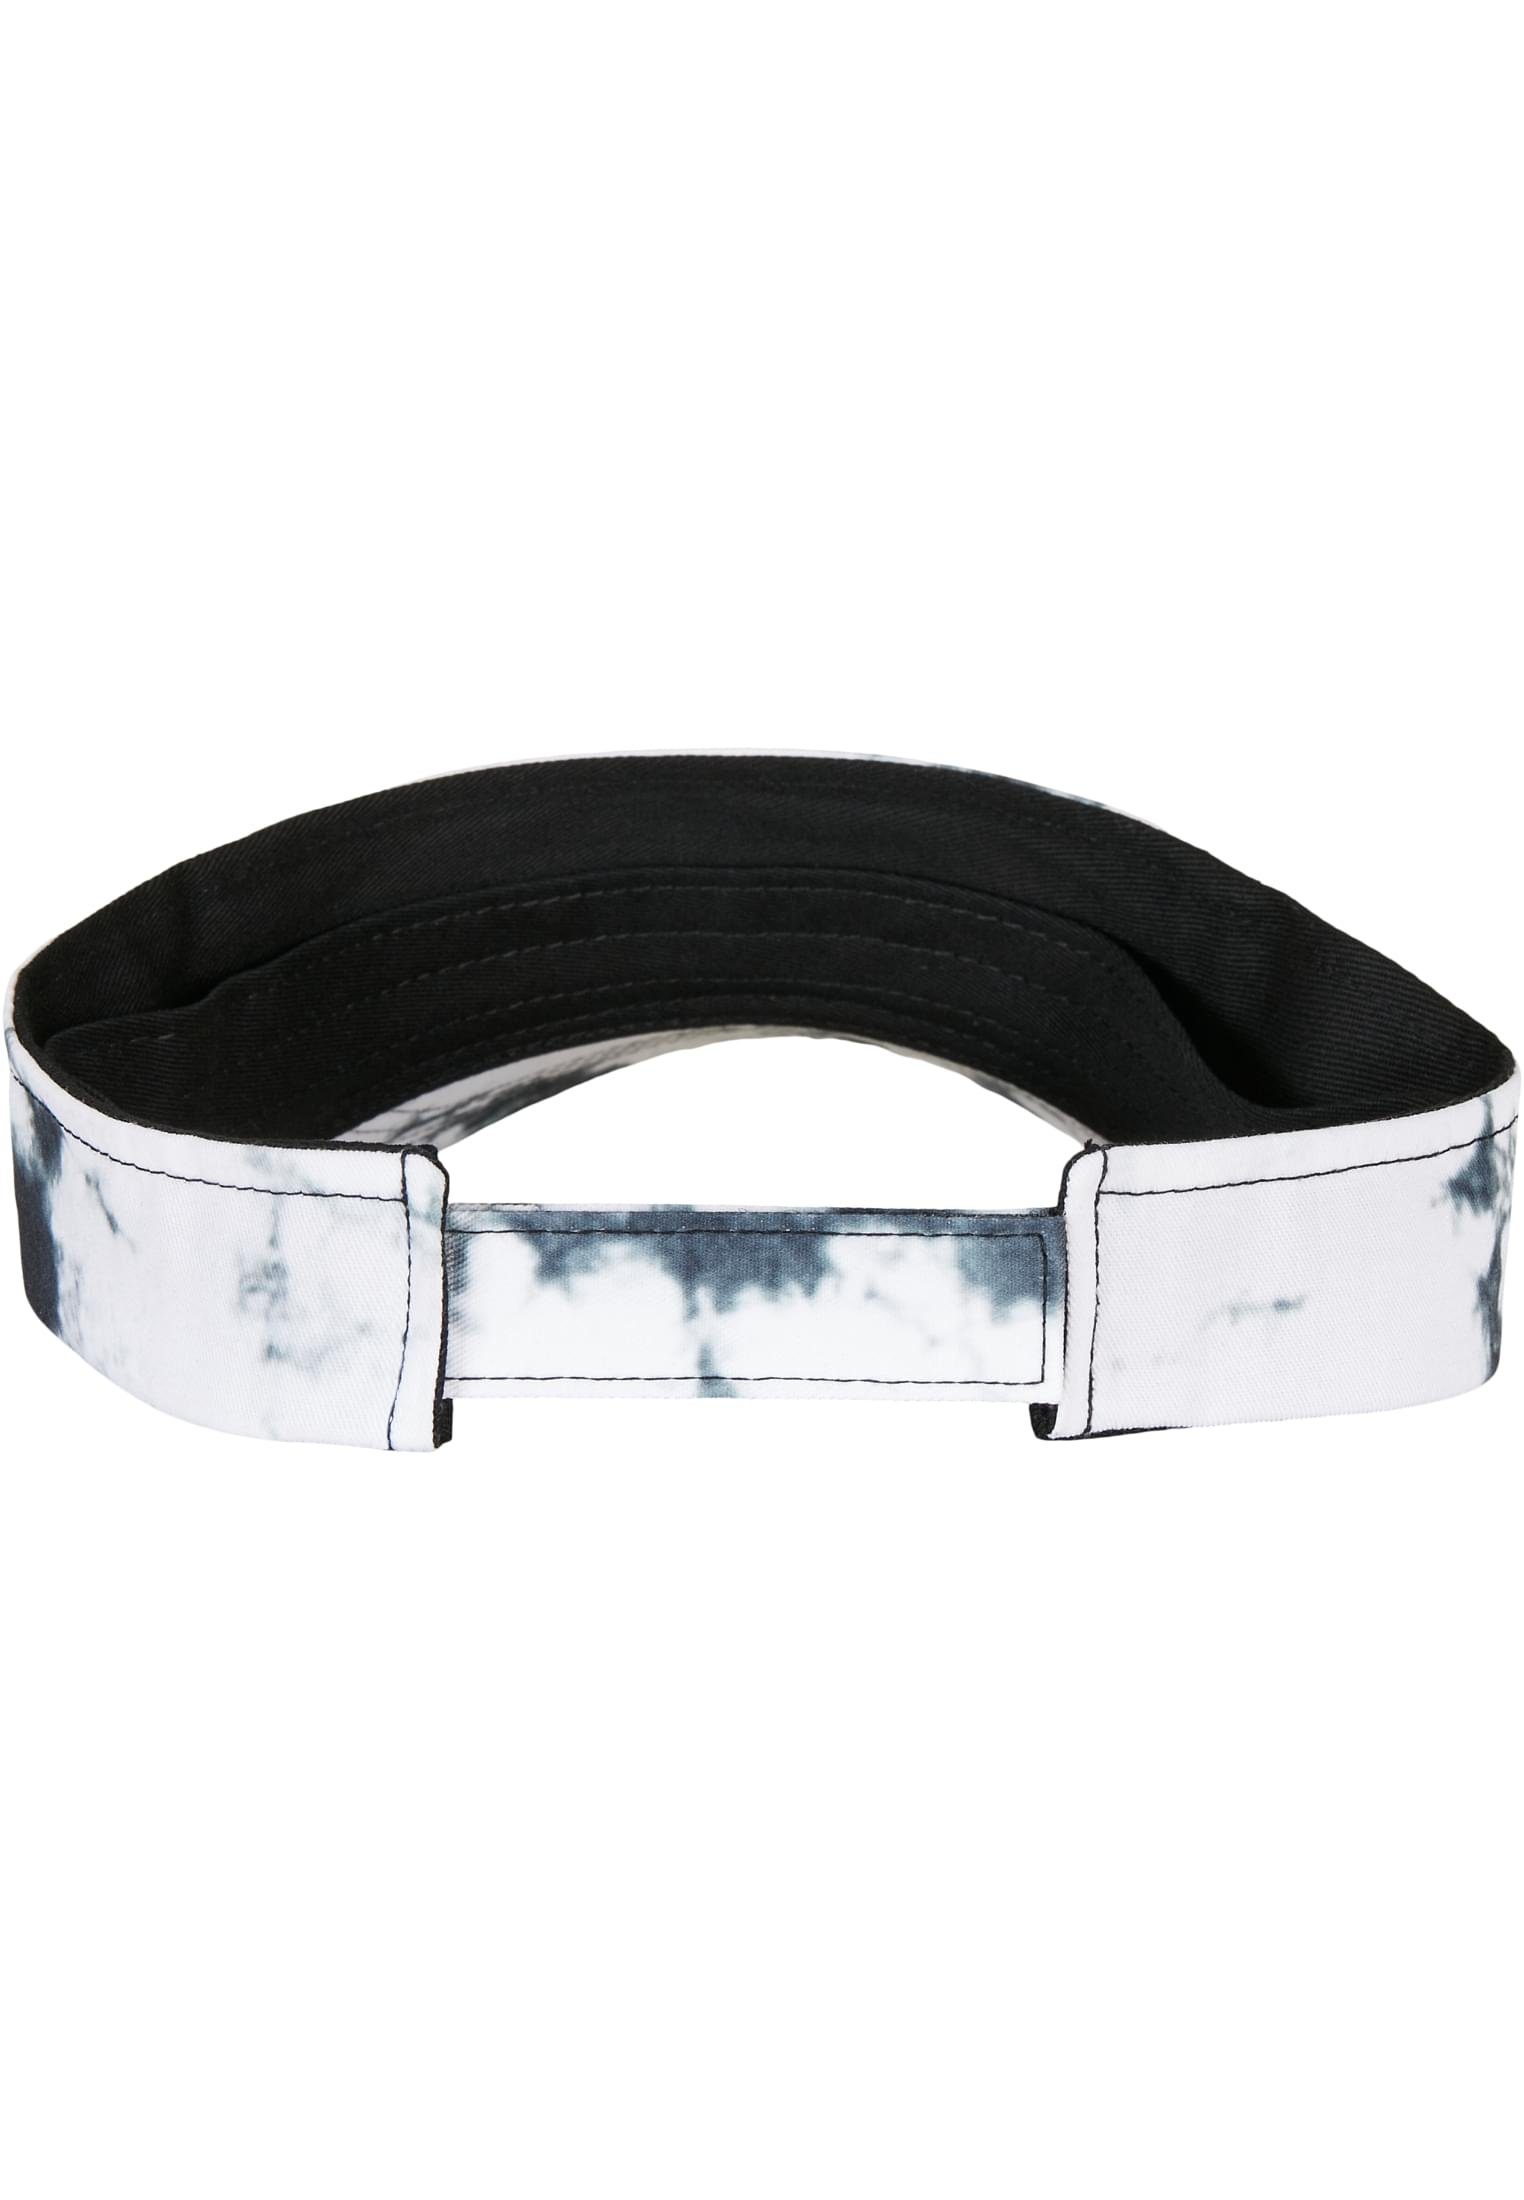 Flexfit Flex Cap Accessoires Cap Dye Batik Visor black/white Curved